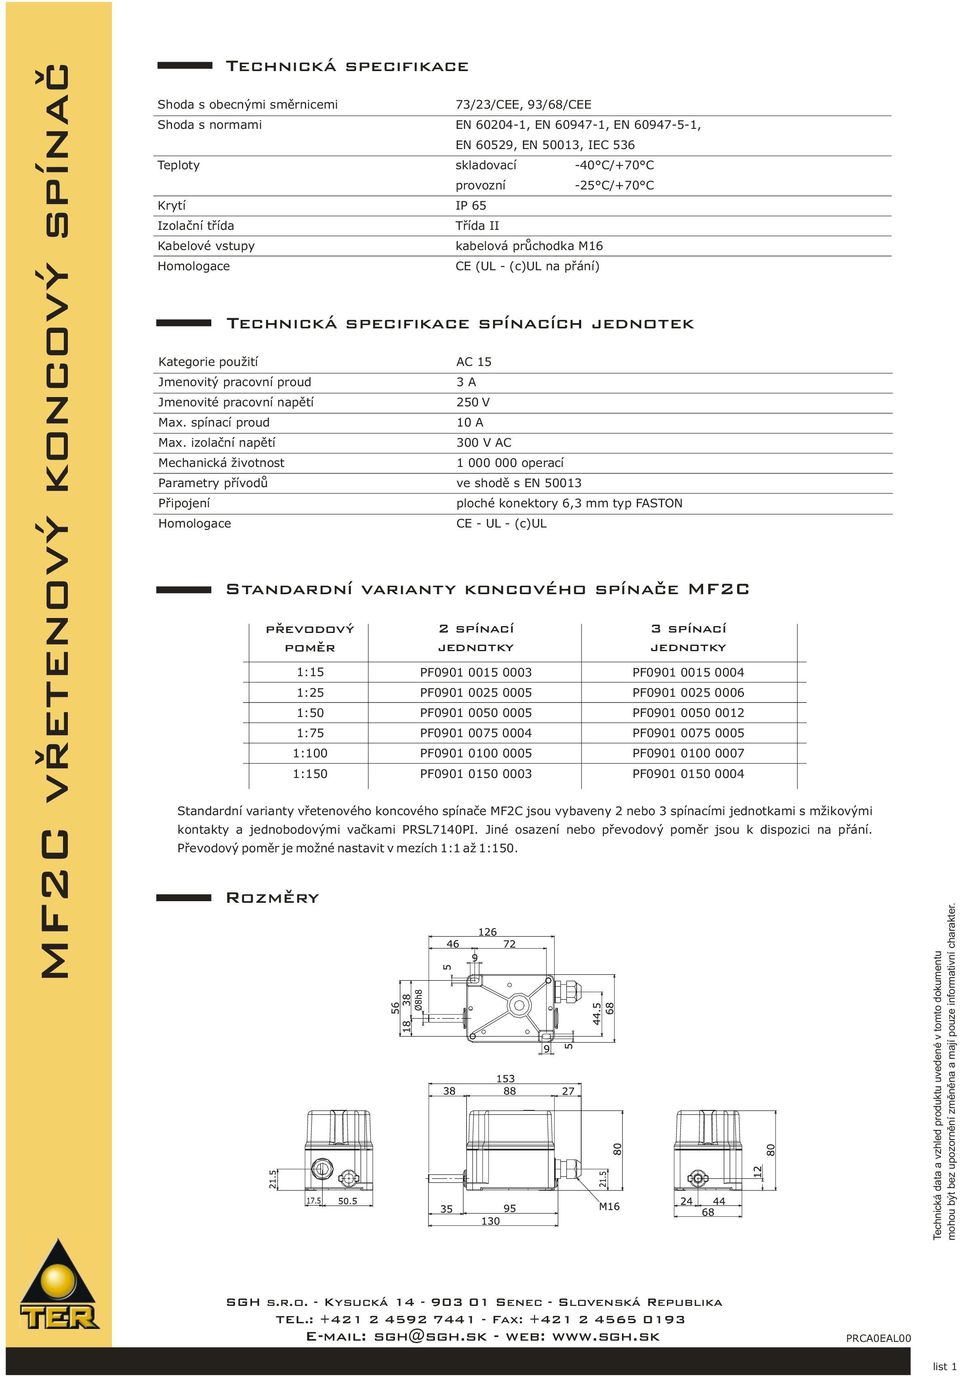 izolační napětí Mechanická životnost Homologace kabelová průchodka M16 CE (UL - (c)ul na přání) 3 A 250 V 10 A 300 V AC 1 000 000 operací Parametry přívodů ve shodě s EN 50013 Připojení CE - UL -